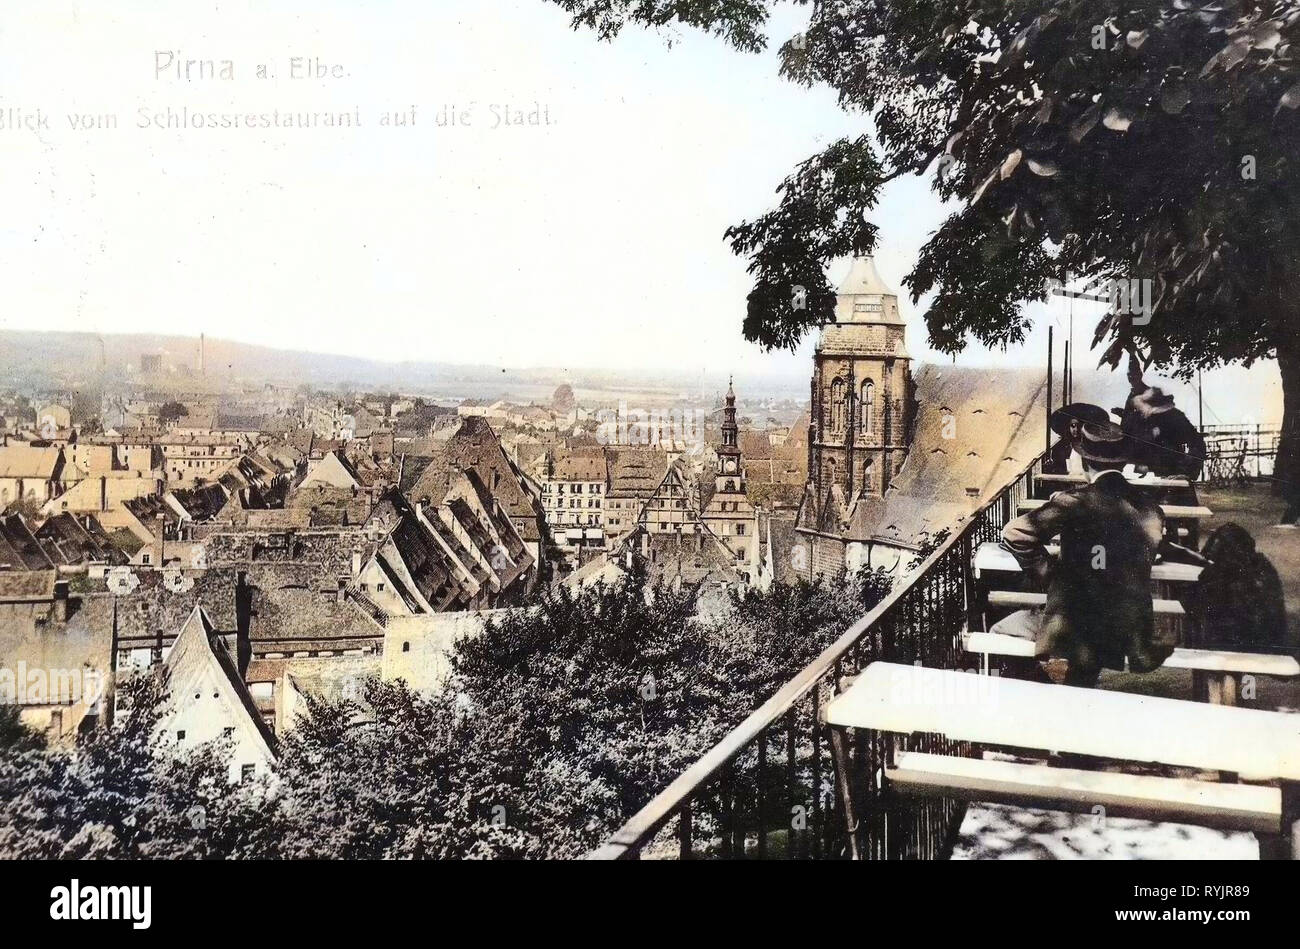 1911, Sächsische Schweiz-Osterzgebirge, Pirna, Blick vom Schloßrestaurant auf die Stadt Stock Photo